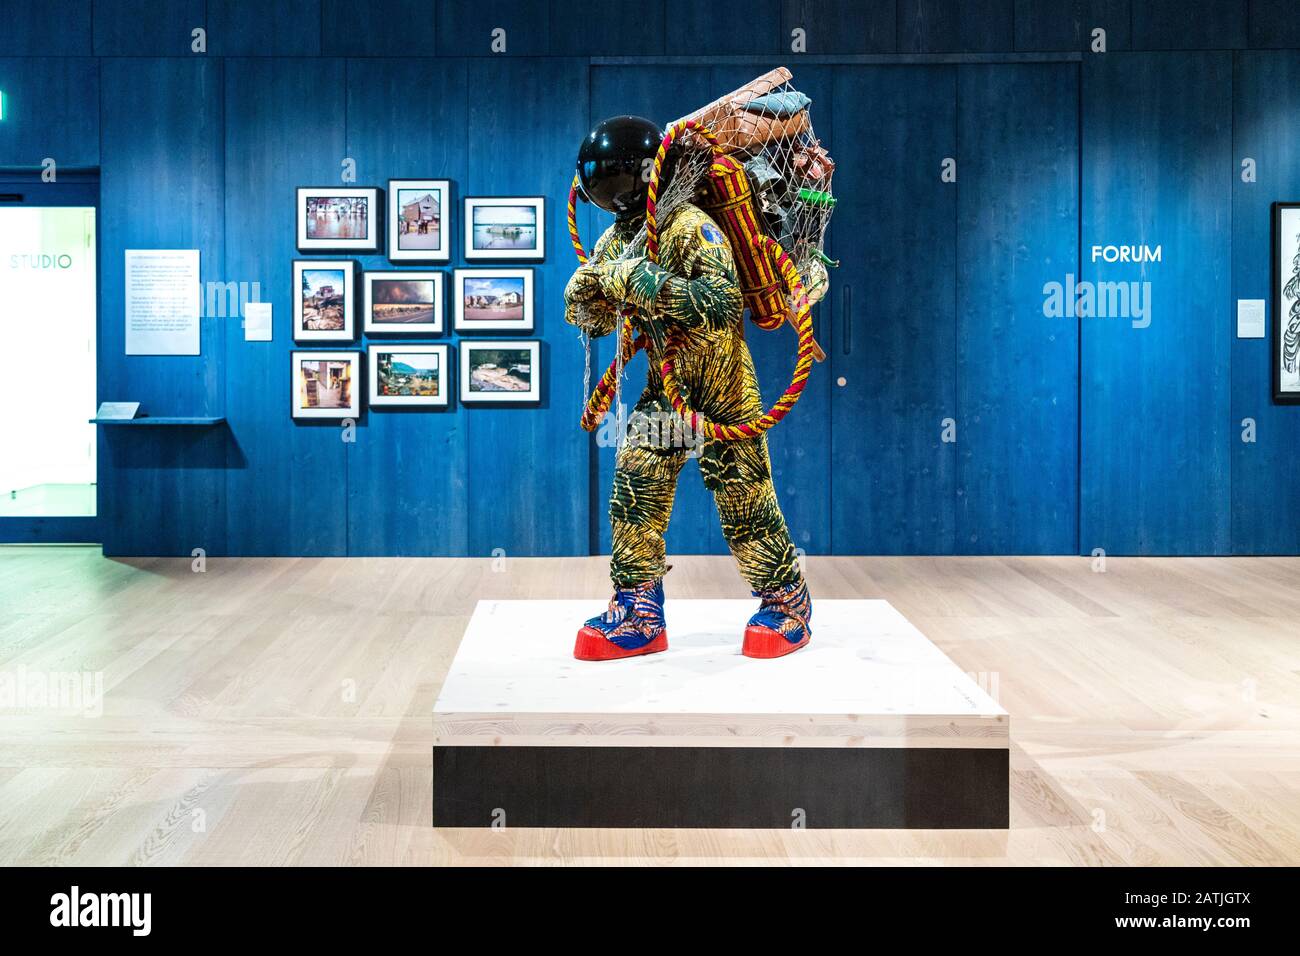 Exposer des expositions à l’exposition permanente Être humain à la collection Wellcome, y compris le ‘astronaute pour réfugiés’ de Yinka Shonibare, Londres, Royaume-Uni Banque D'Images